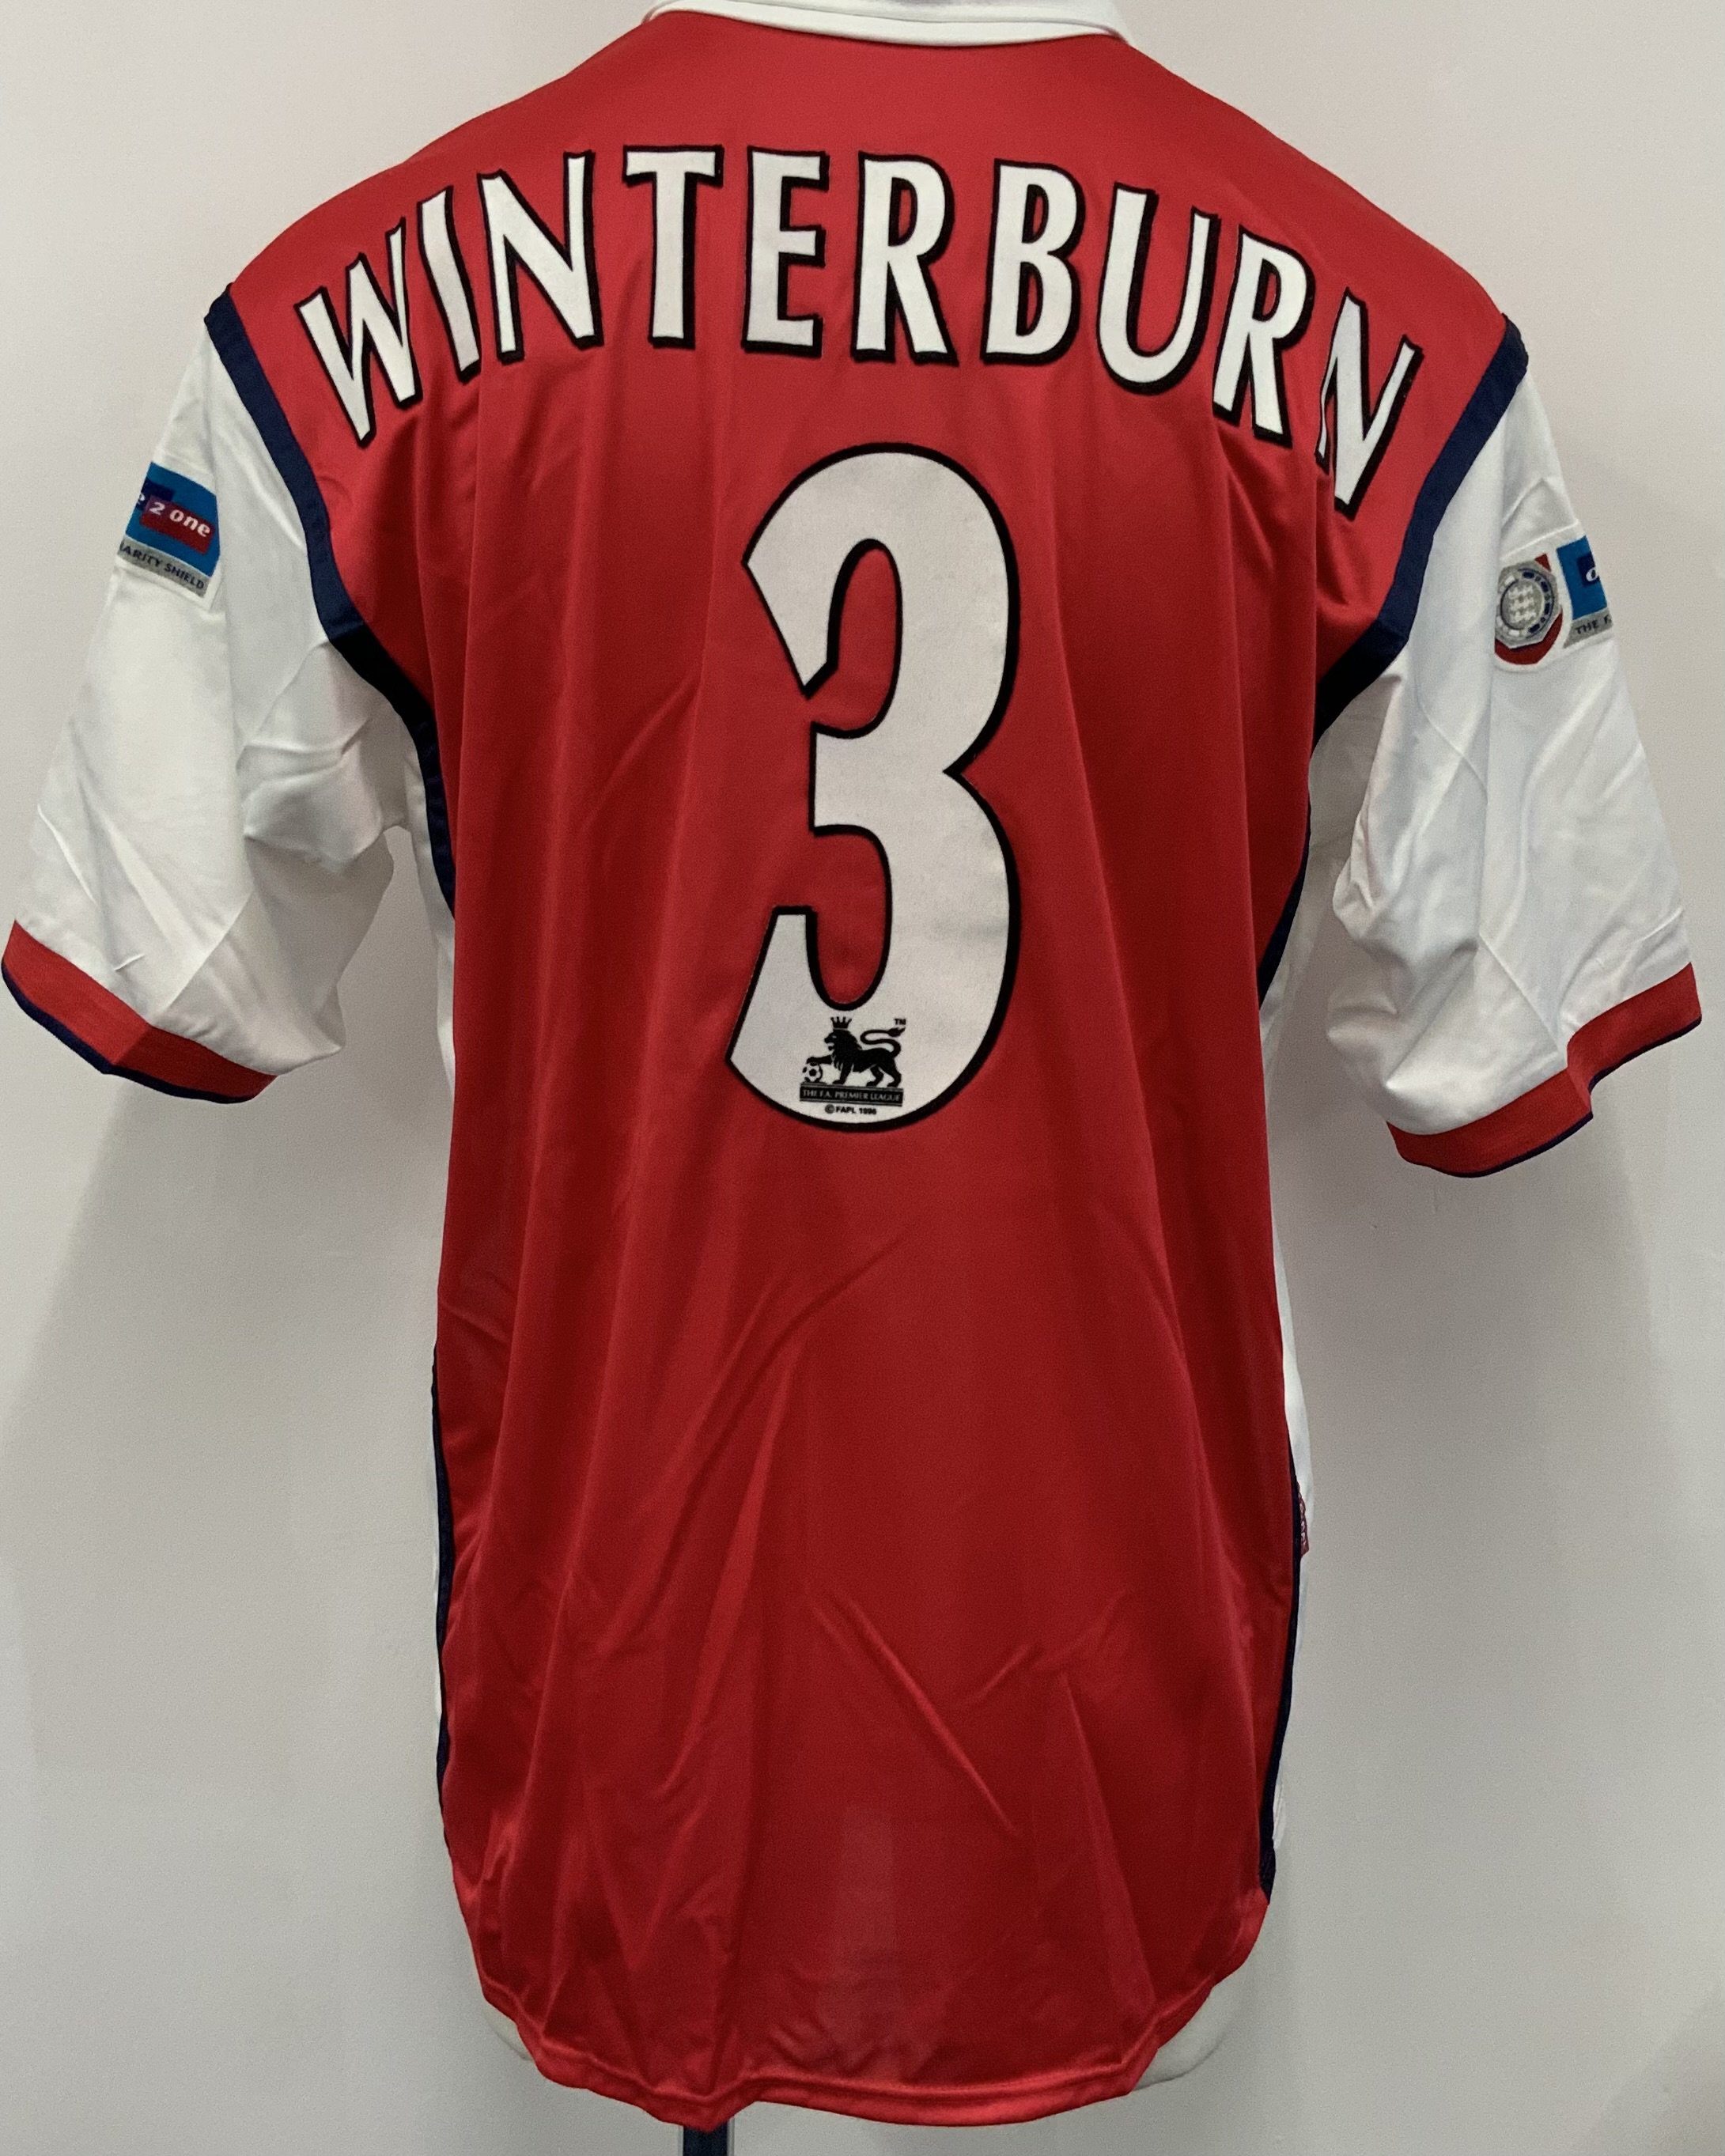 Winterburn Arsenal 1999 Charity Shield Match Worn